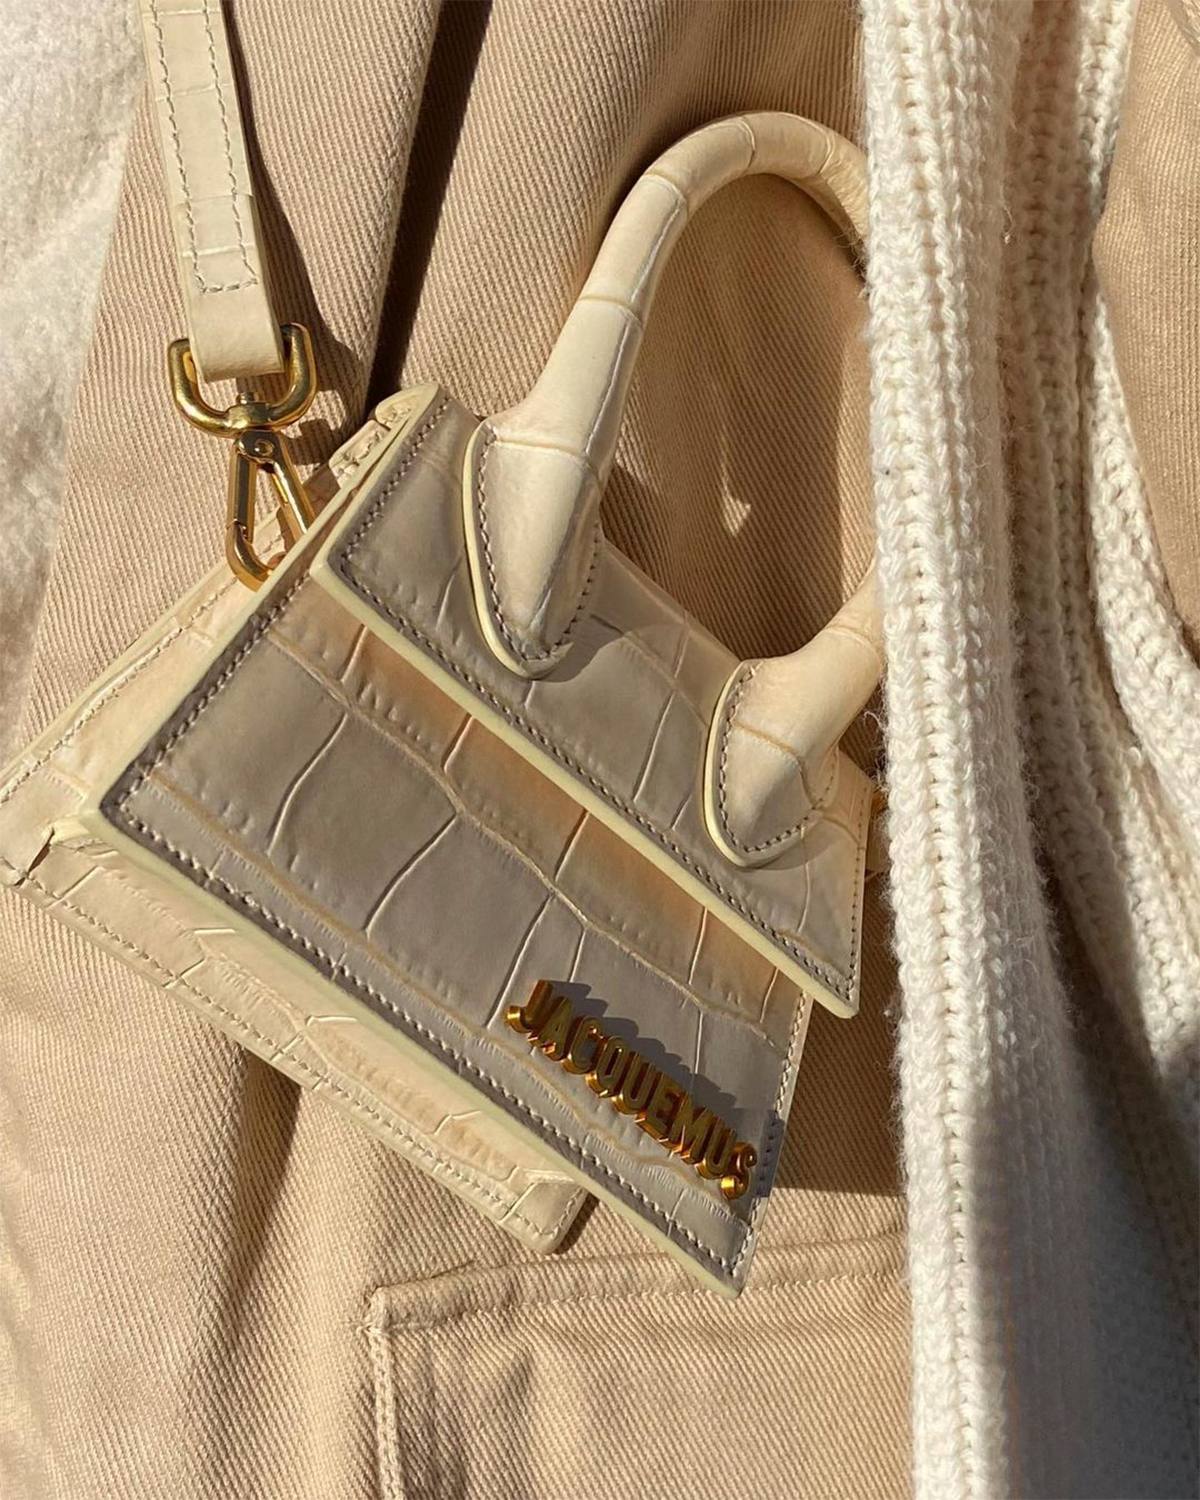 Louis Vuitton, Chanel or Prada? Plastic is passé – luxury reusable